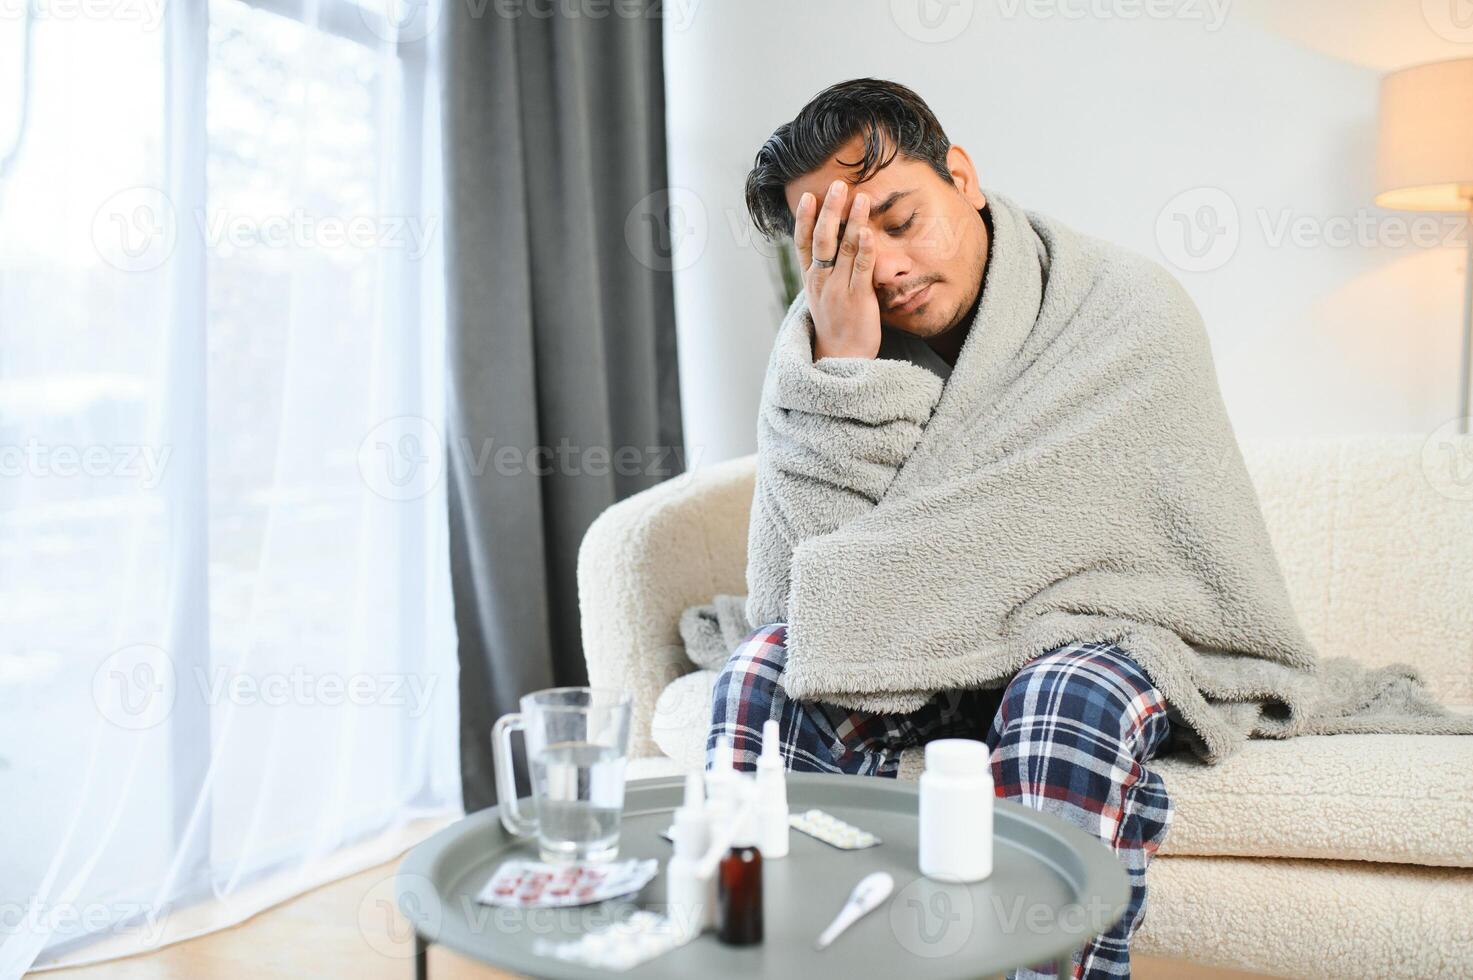 Gesundheit, kalt und Menschen Konzept - - krank jung indisch Mann im Decke haben Kopfschmerzen oder Fieber beim Zuhause foto